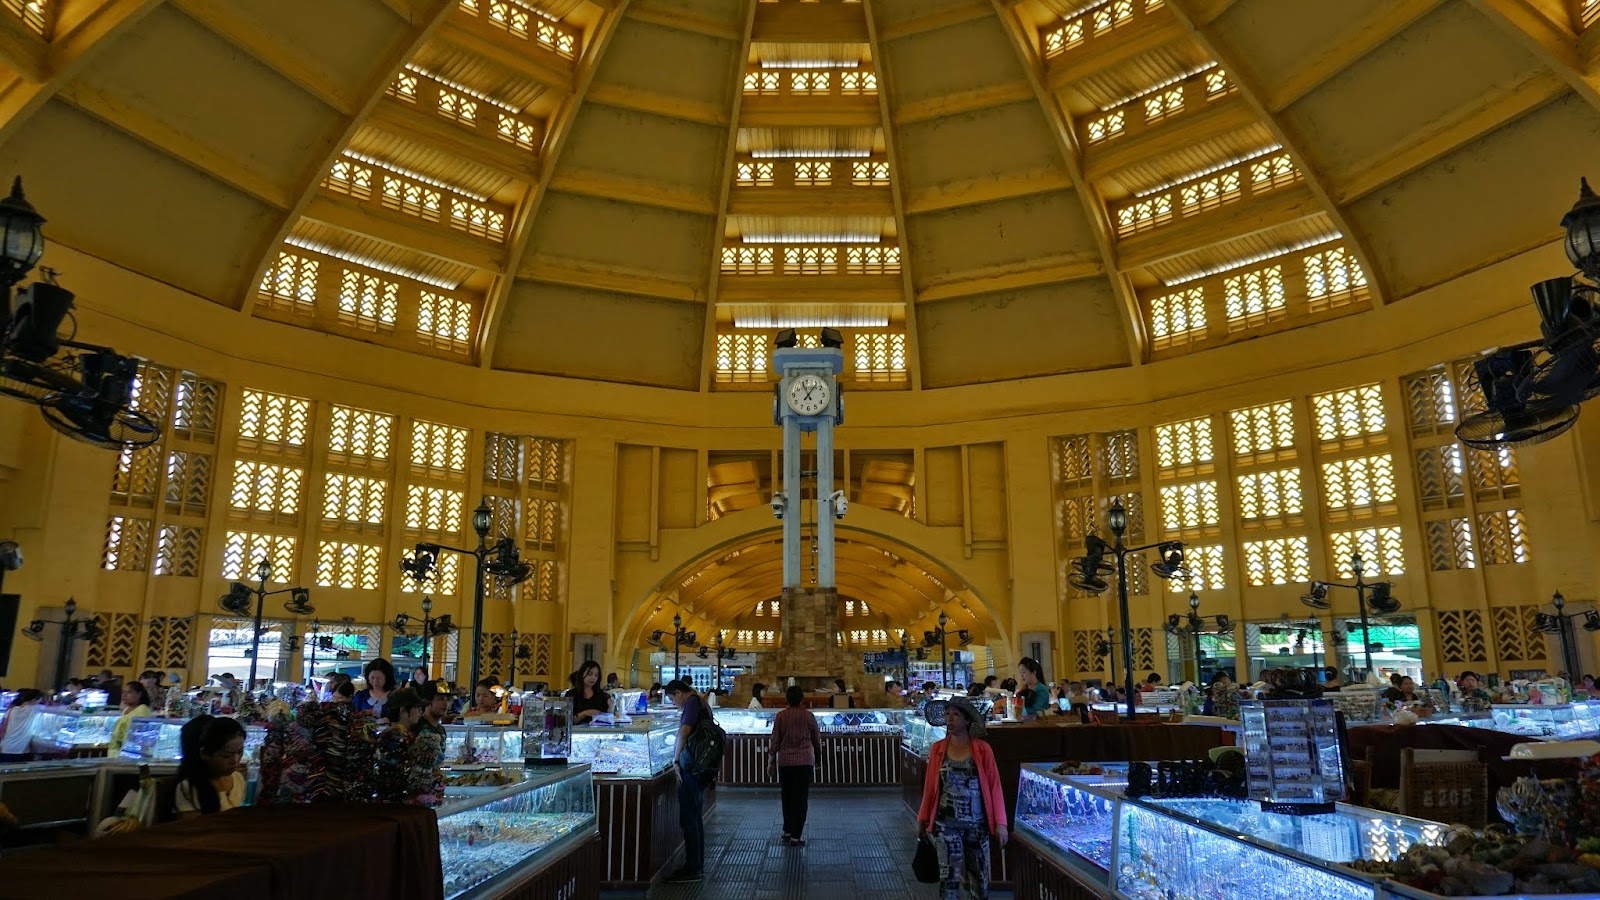 Inside Central Market